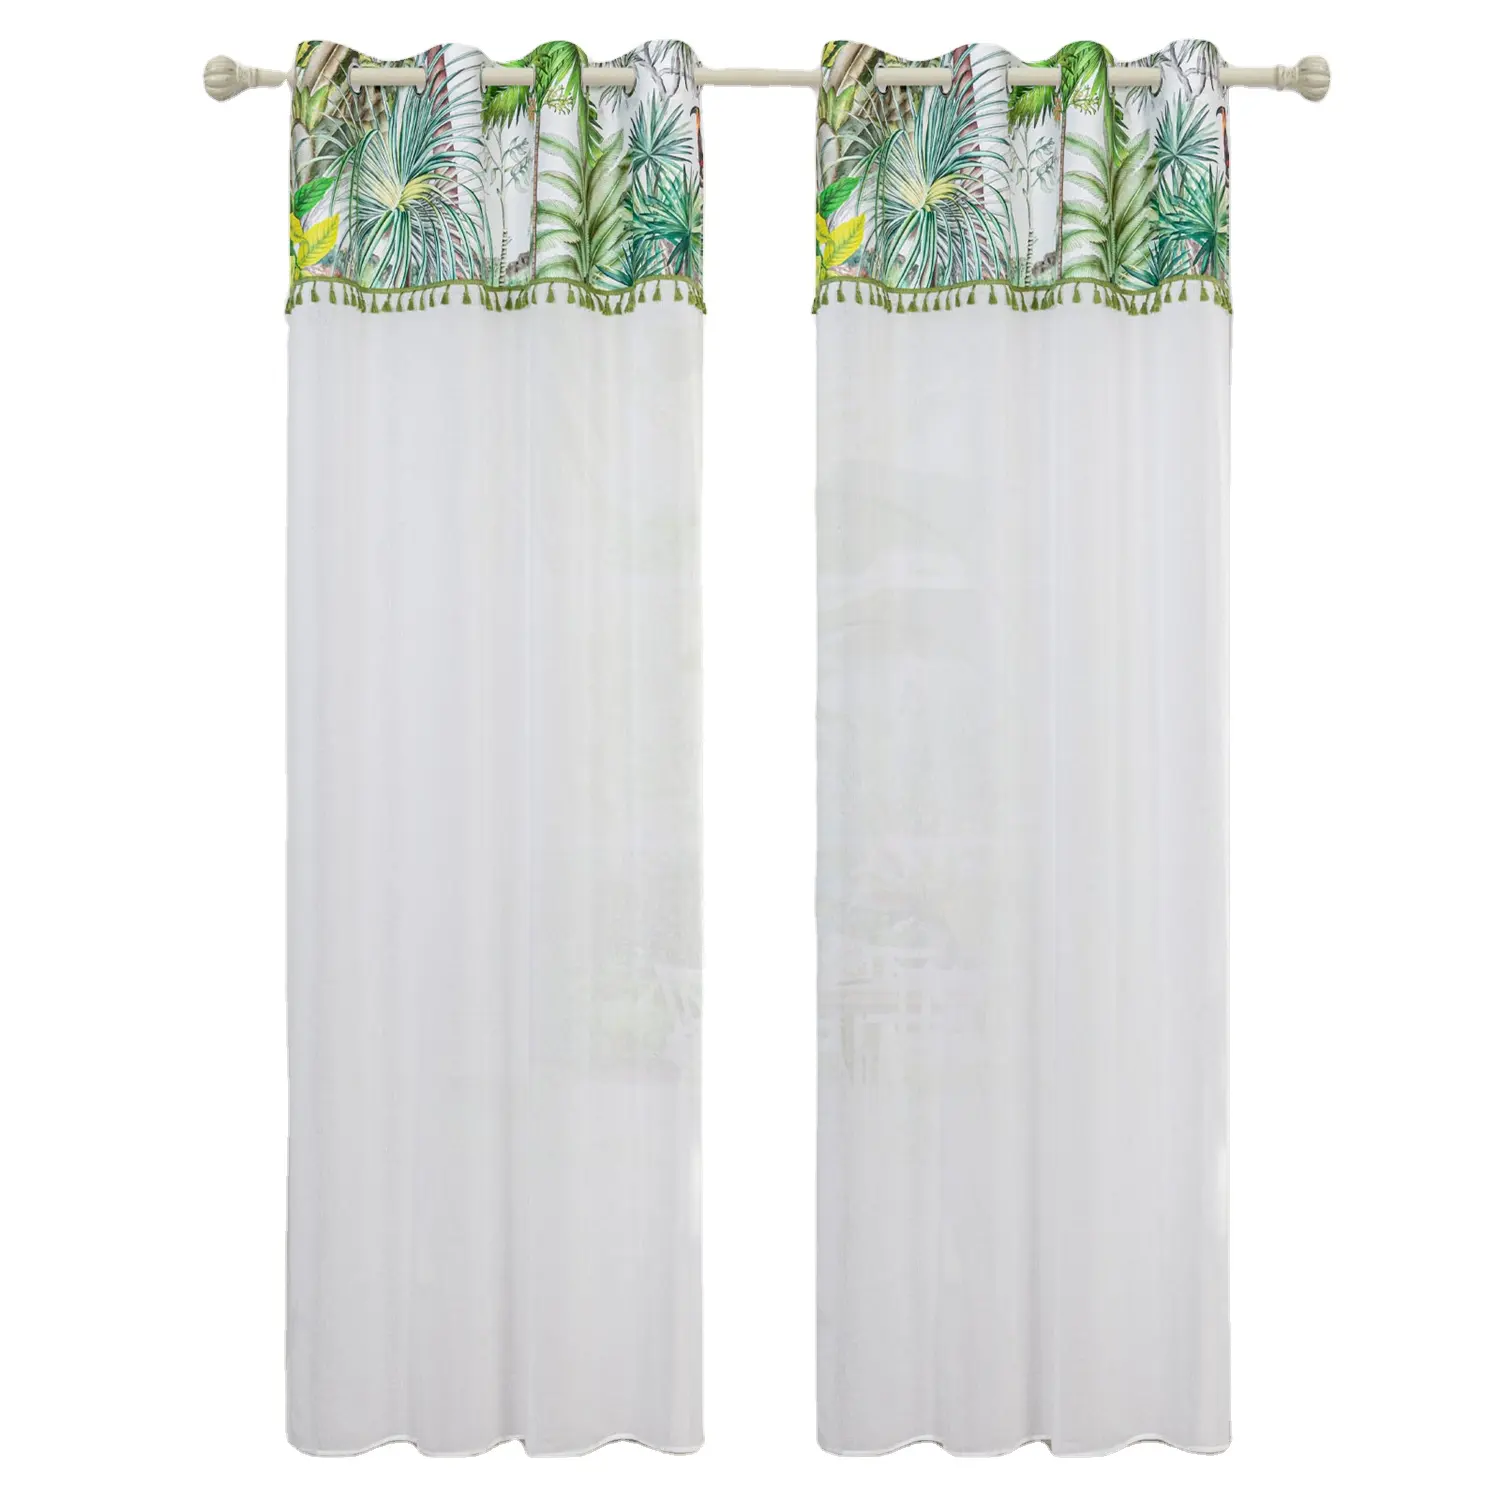 Ltaly Style Romantic Curtain Printed White Velvet Sheer Splicing Curtain For livingroom